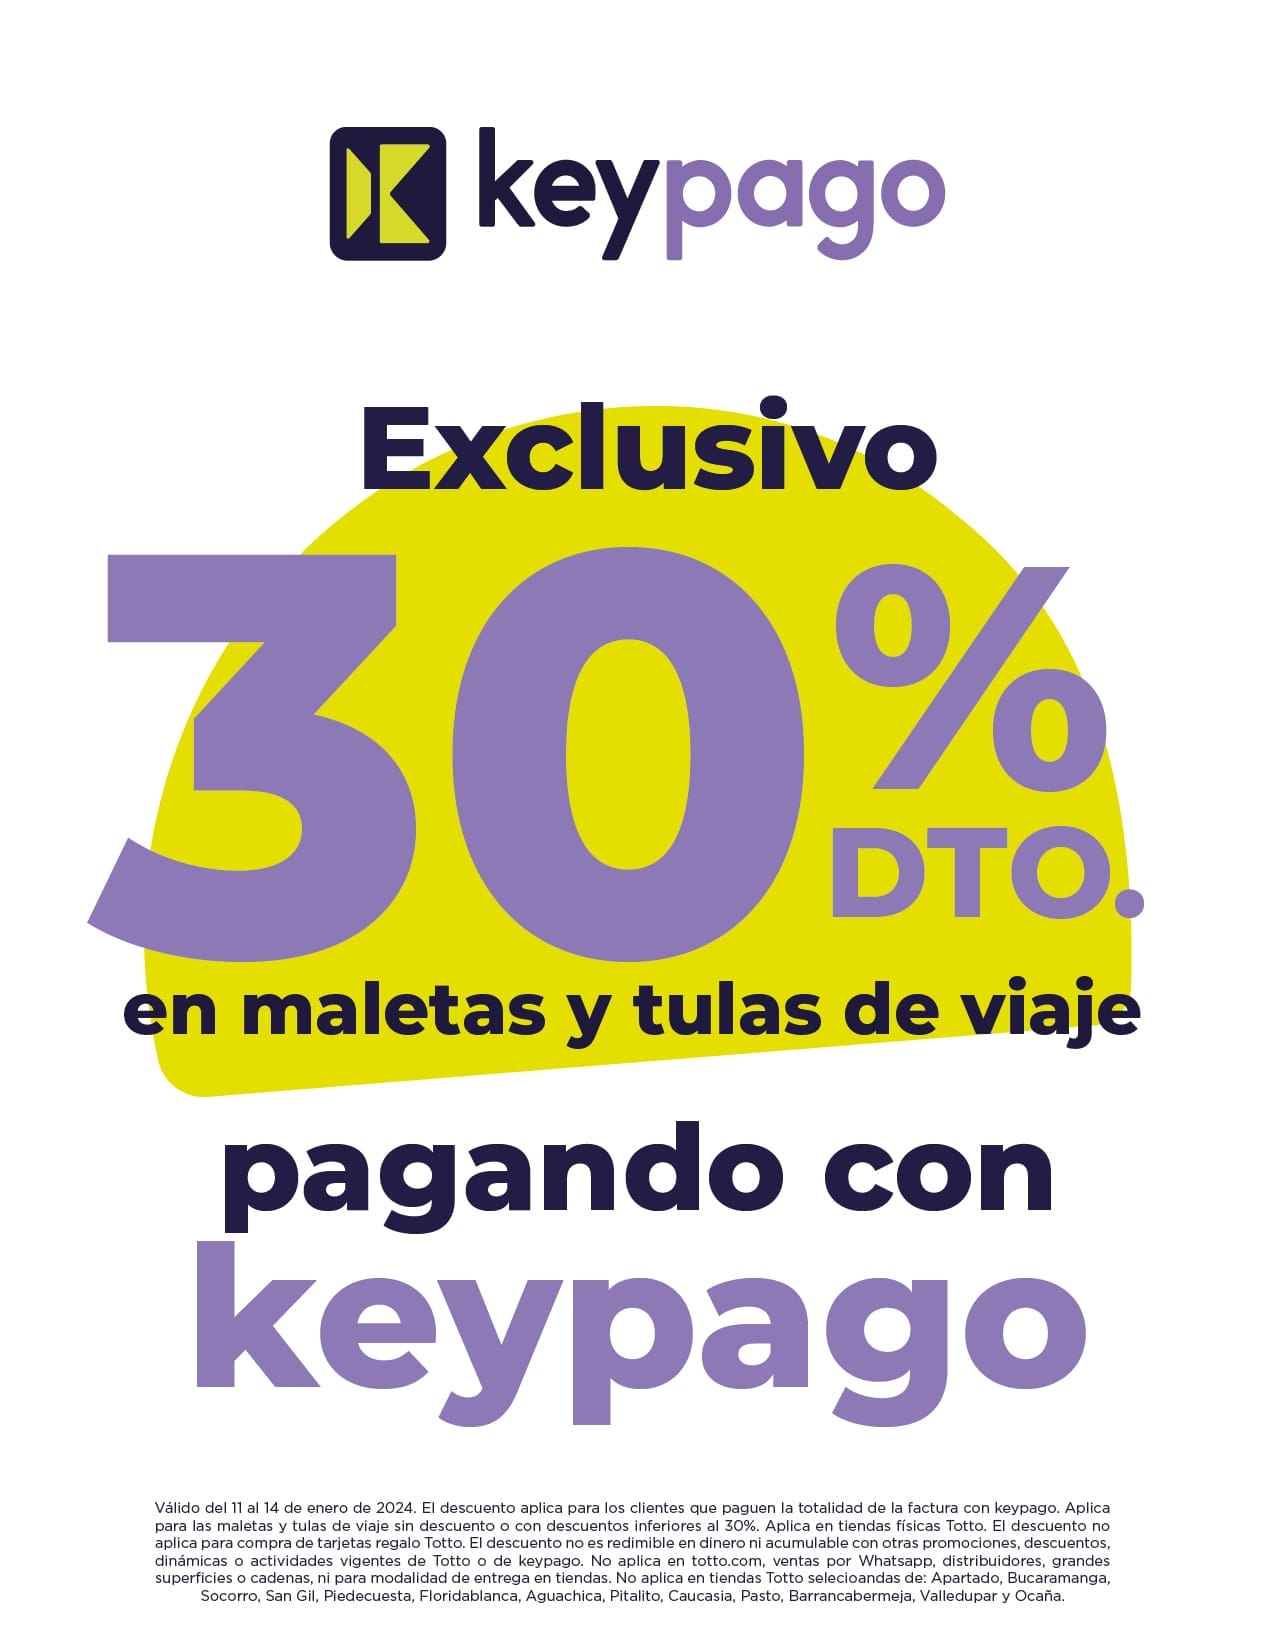 Equipo de keypago trabajando para ofrecerte el mejor crédito digital